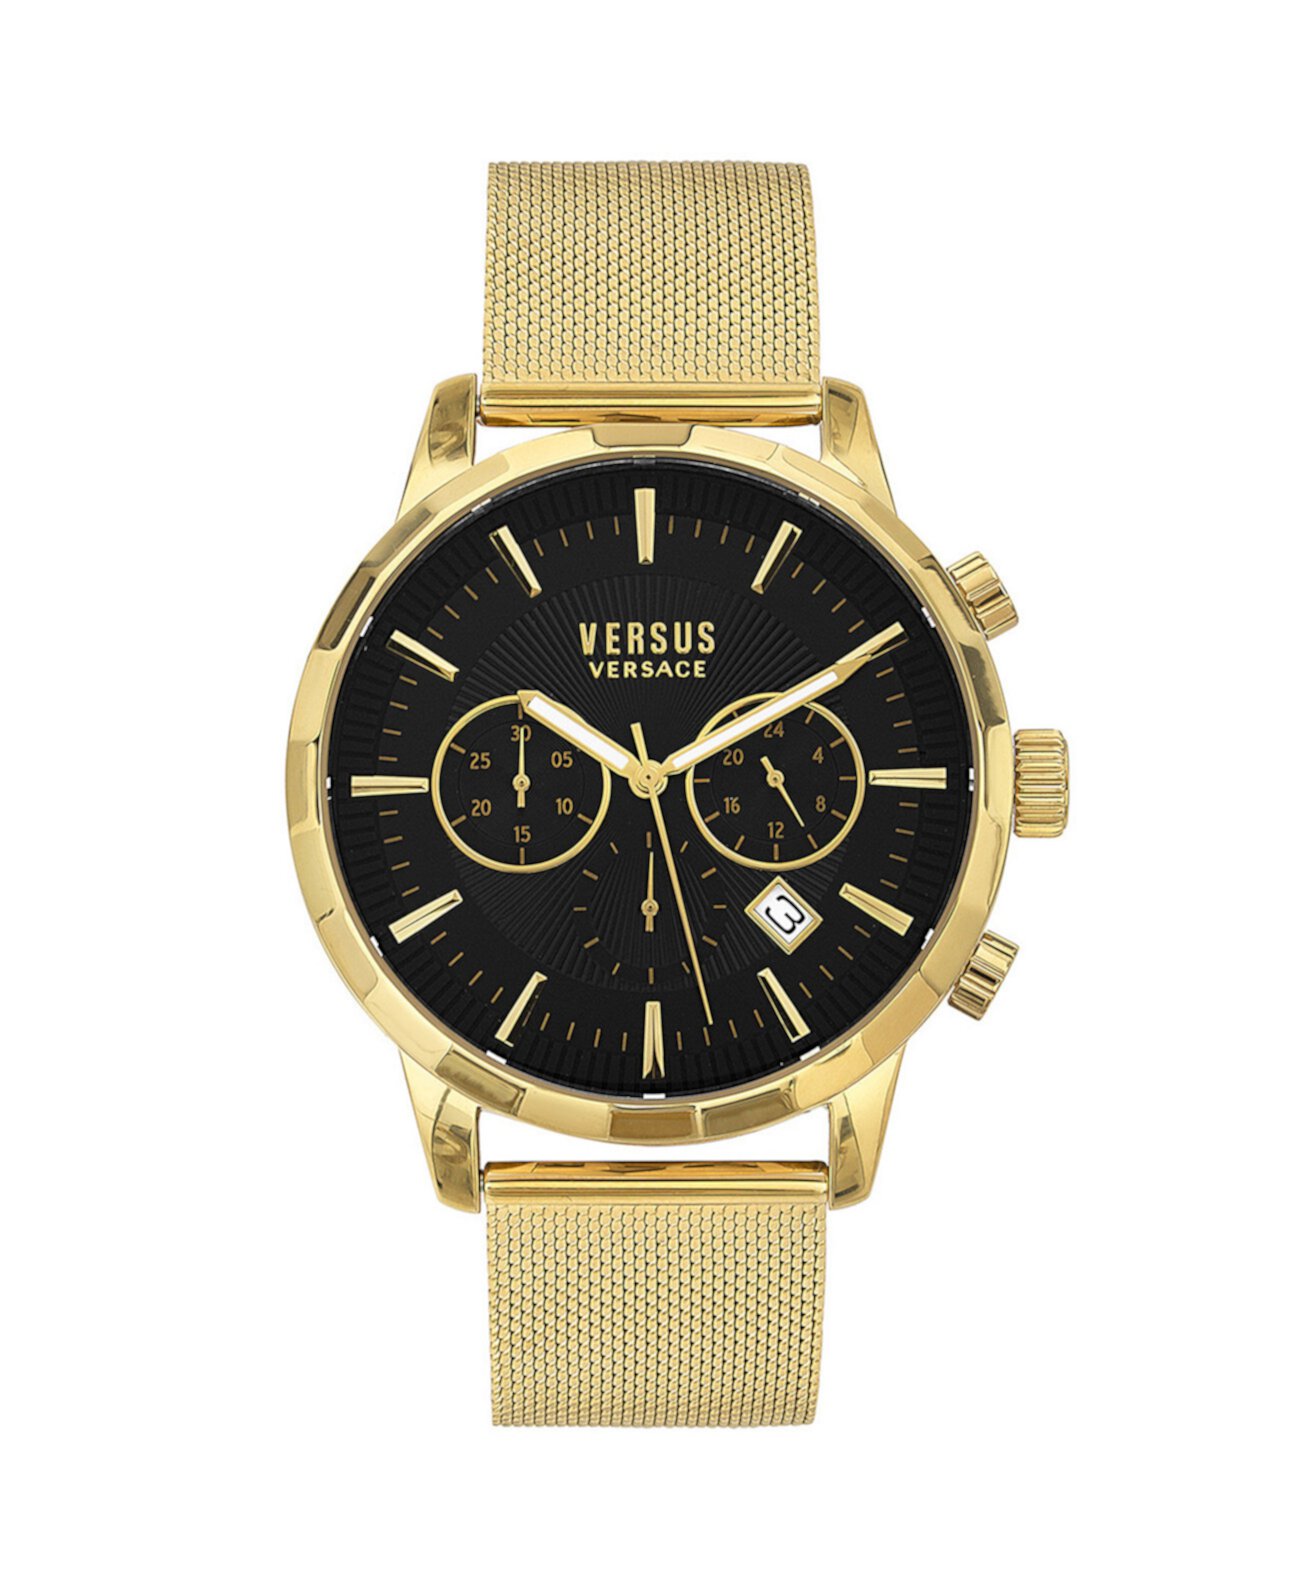 Мужские кварцевые часы-хронограф Eugene с золотистым браслетом из нержавеющей стали, 46 мм, с кожаным ремешком, 2 шт. Versus Versace